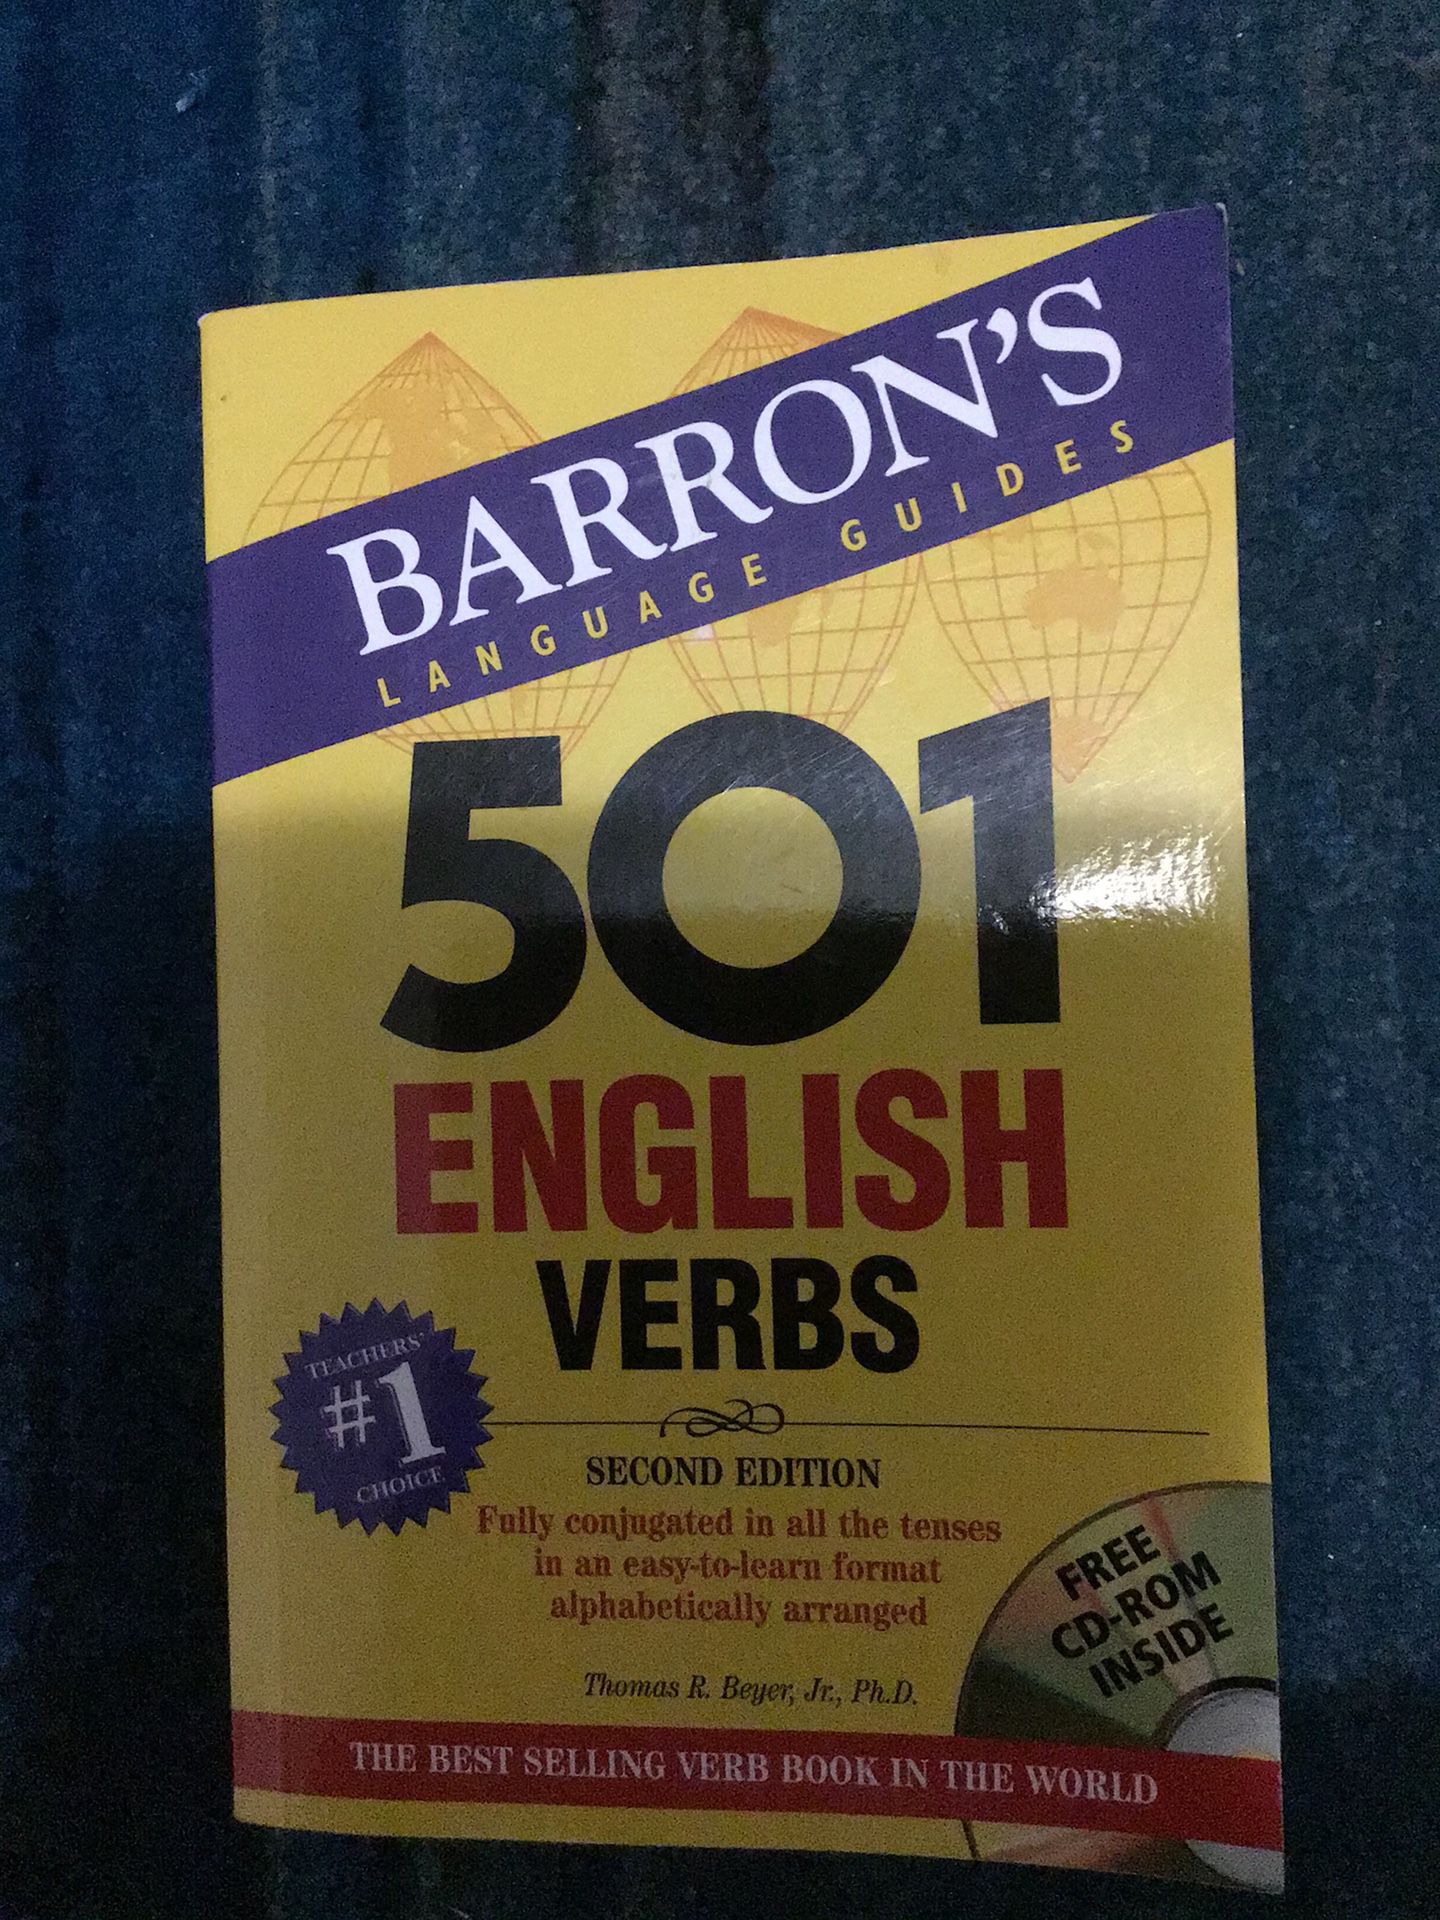 English Book, BARRON’S Editorial